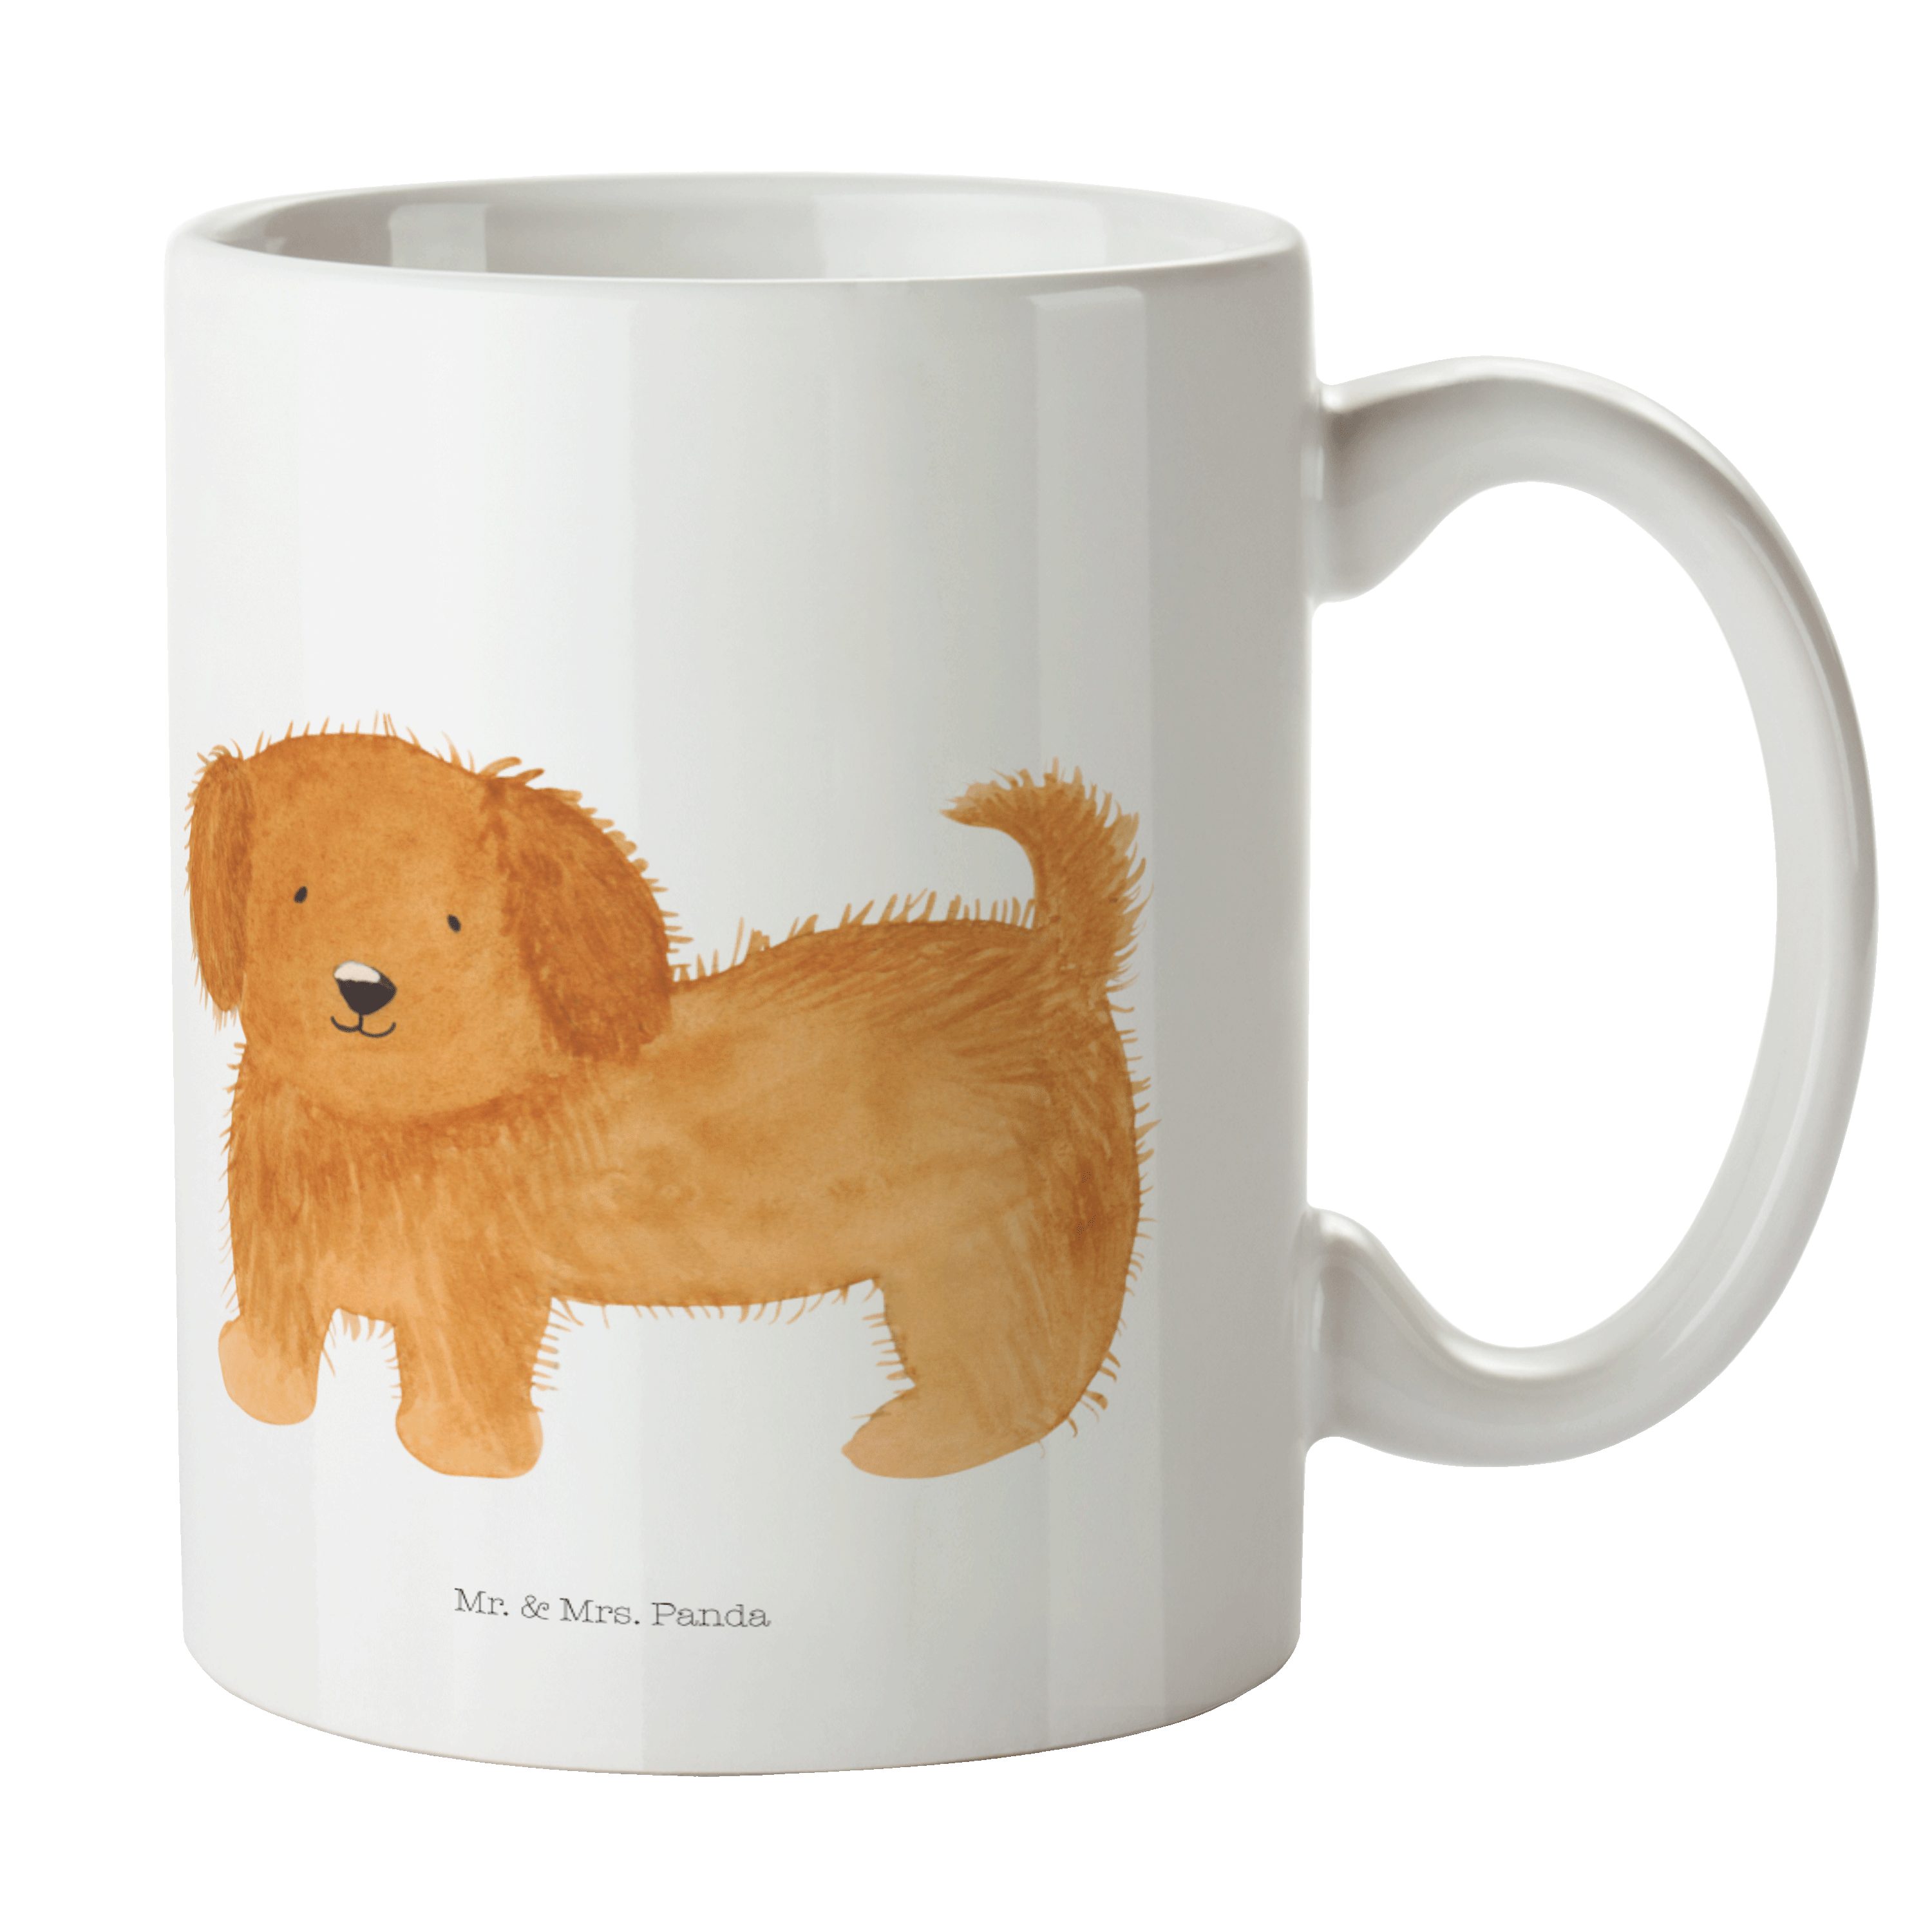 Mr. & Mrs. Panda Tasse Hund flauschig - Weiß - Geschenk, Hundebesitzer, Geschenk Tasse, Tass, Keramik